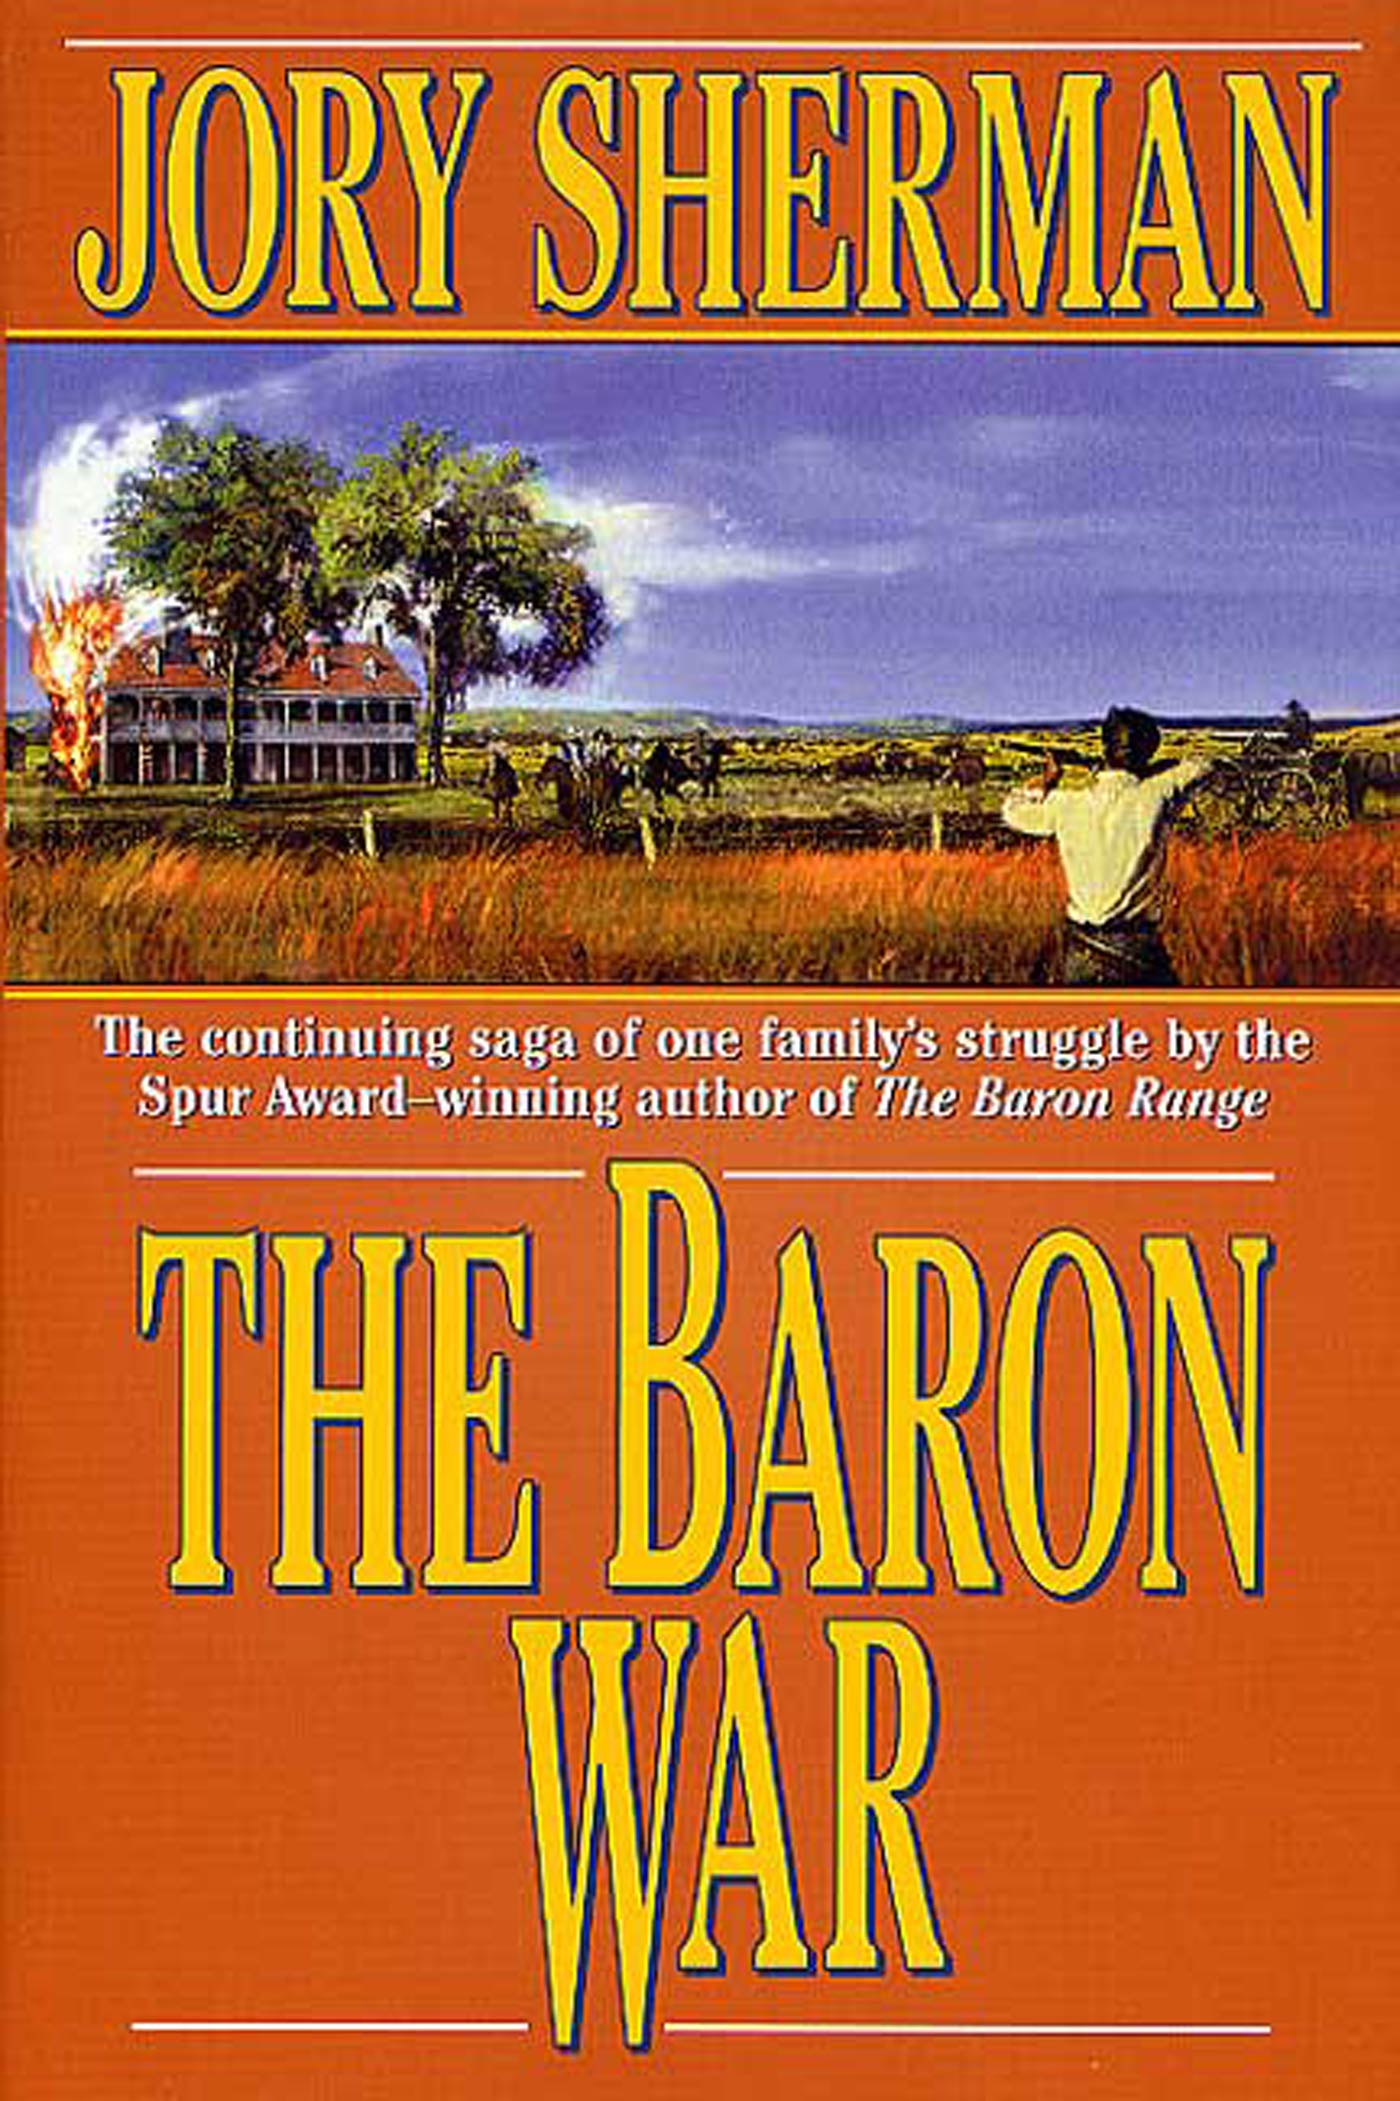 The Baron War : A Martin Baron Novel by Jory Sherman